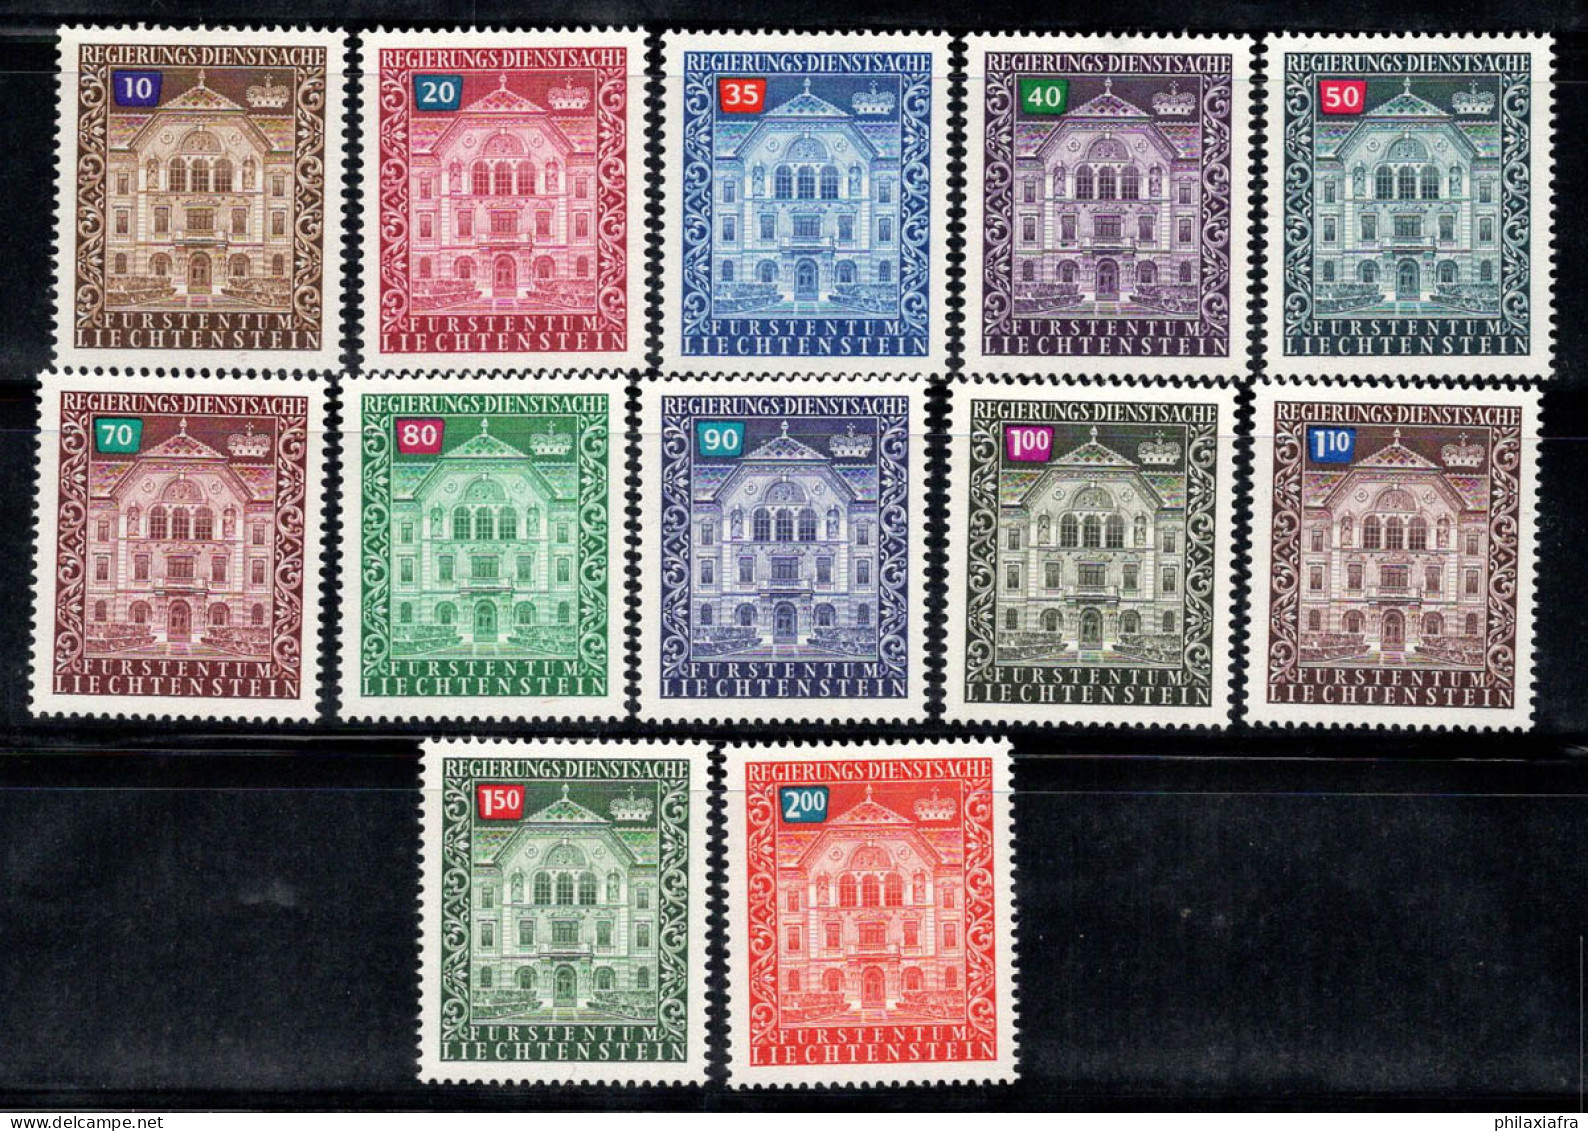 Liechtenstein 1976 Mi. 57-68 Neuf ** 80% Service Édifice Gouvernemental - Dienstzegels